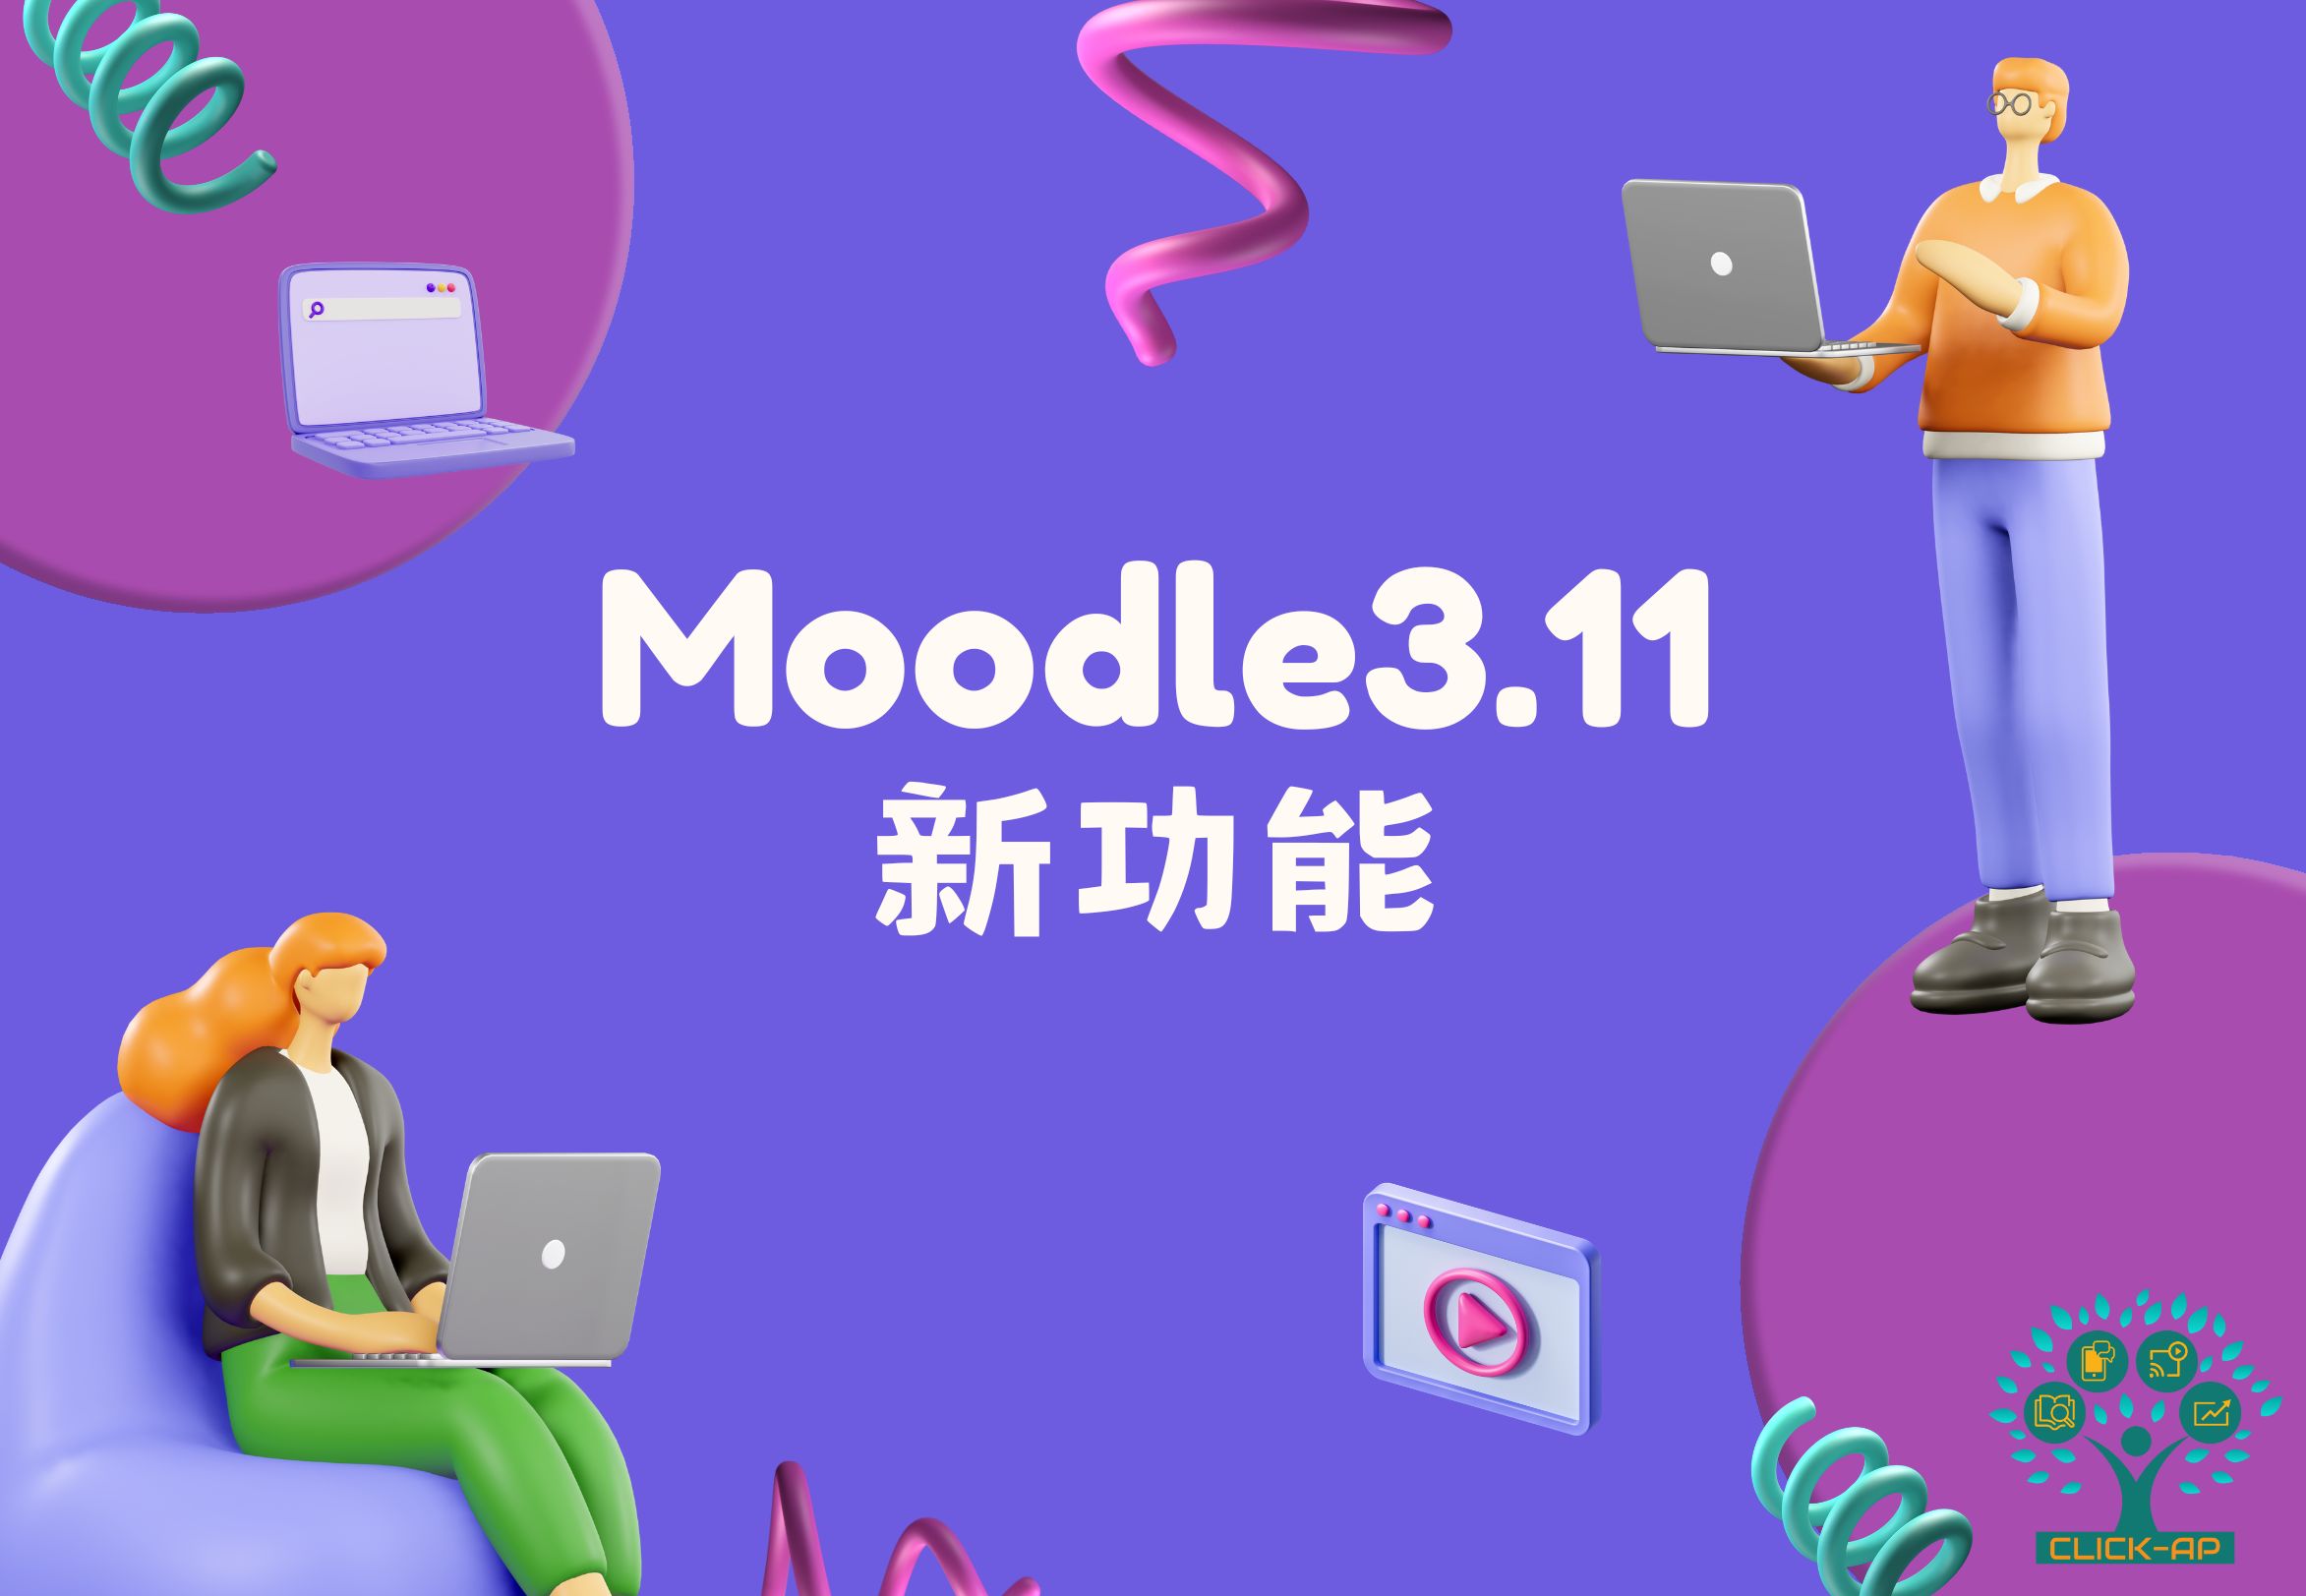 Moodle 3.11 新功能